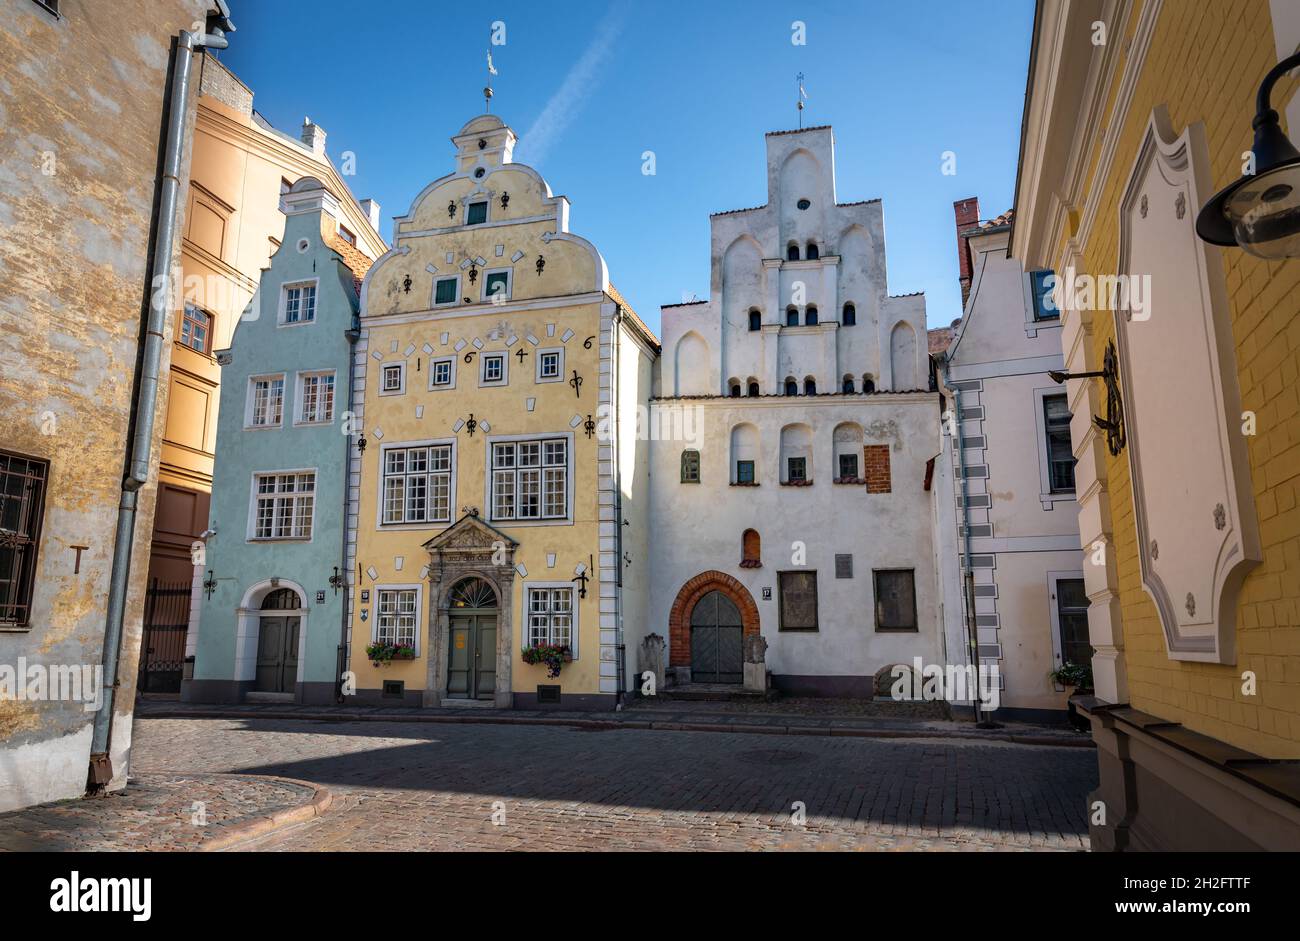 Trois Frères - trois maisons d'habitation à Riga, la plus ancienne datant de la fin du XVe siècle - Riga, Lettonie Banque D'Images